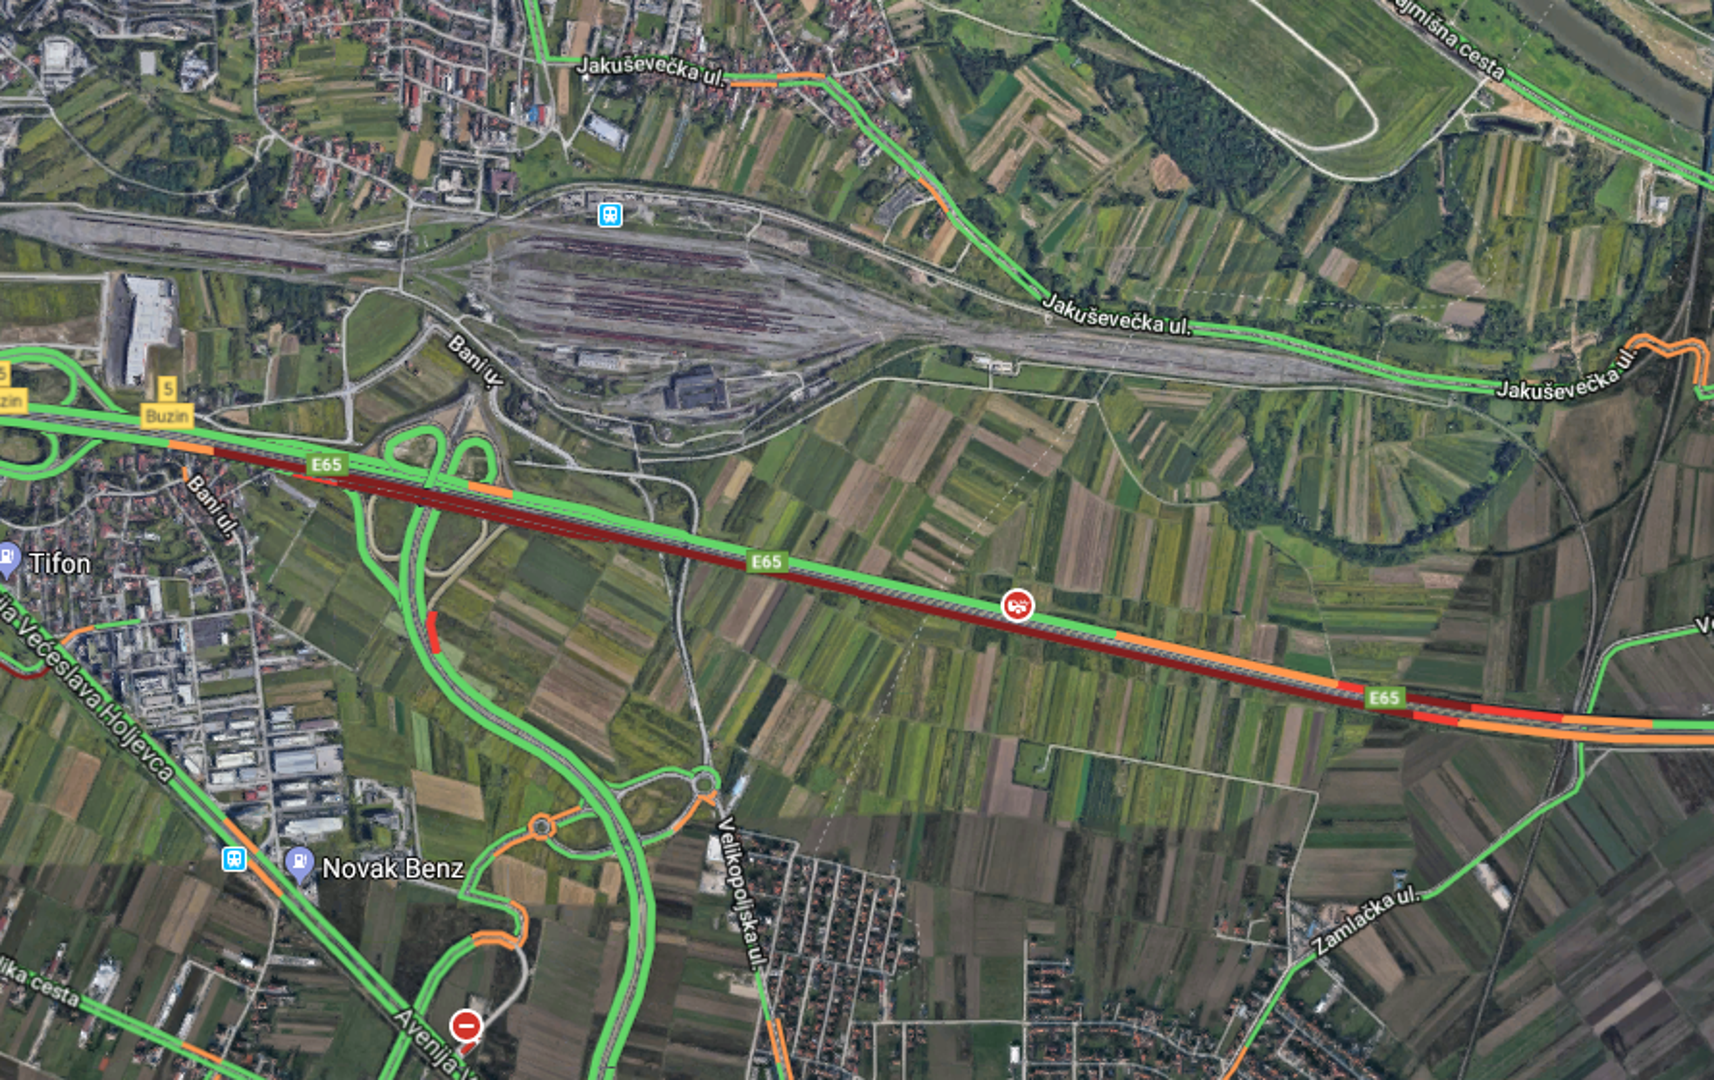 Zbog prometne nesreće u kojoj je sudjelovalo više vozila na zagrebačkoj obilaznici (A3) između čvorova Buzin i Kosnica, u smjeru Lipovca kolona je oko 2 km, javlja HAK.